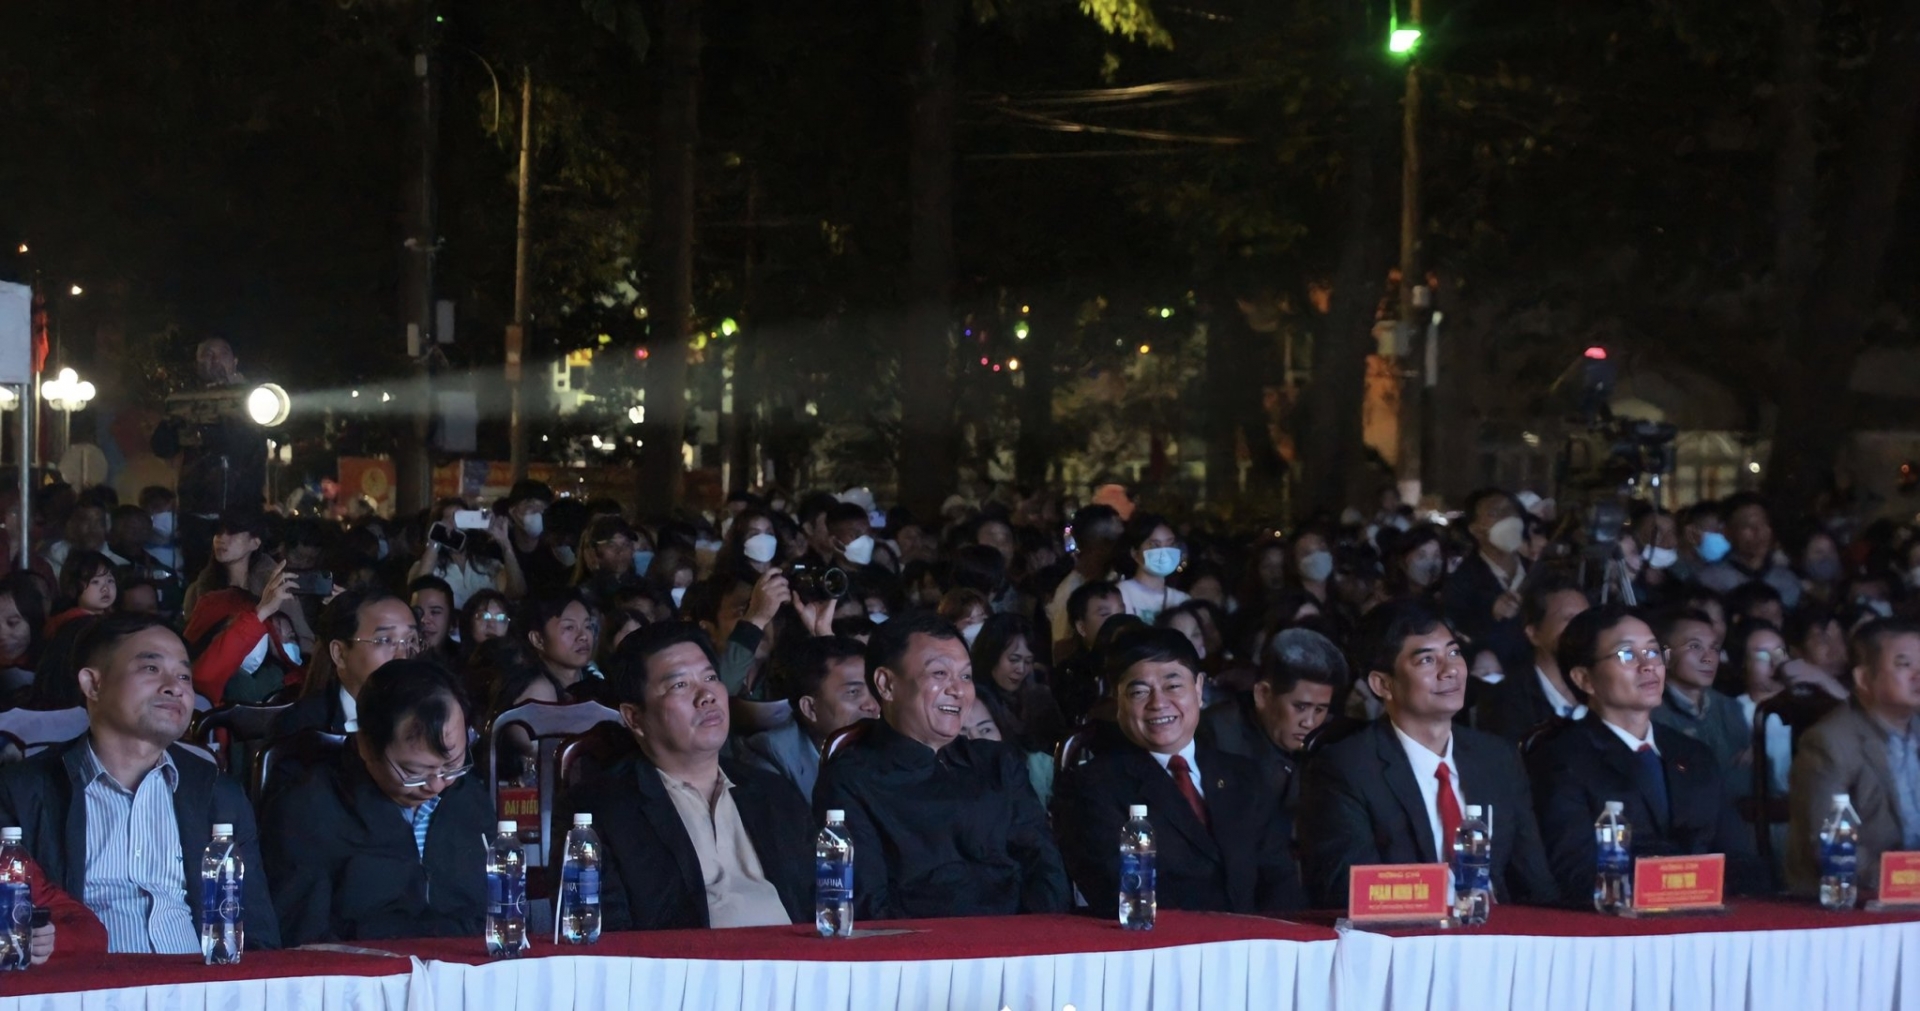 Đại biểu cùng đông đảo người dân theo dõi chương trình.